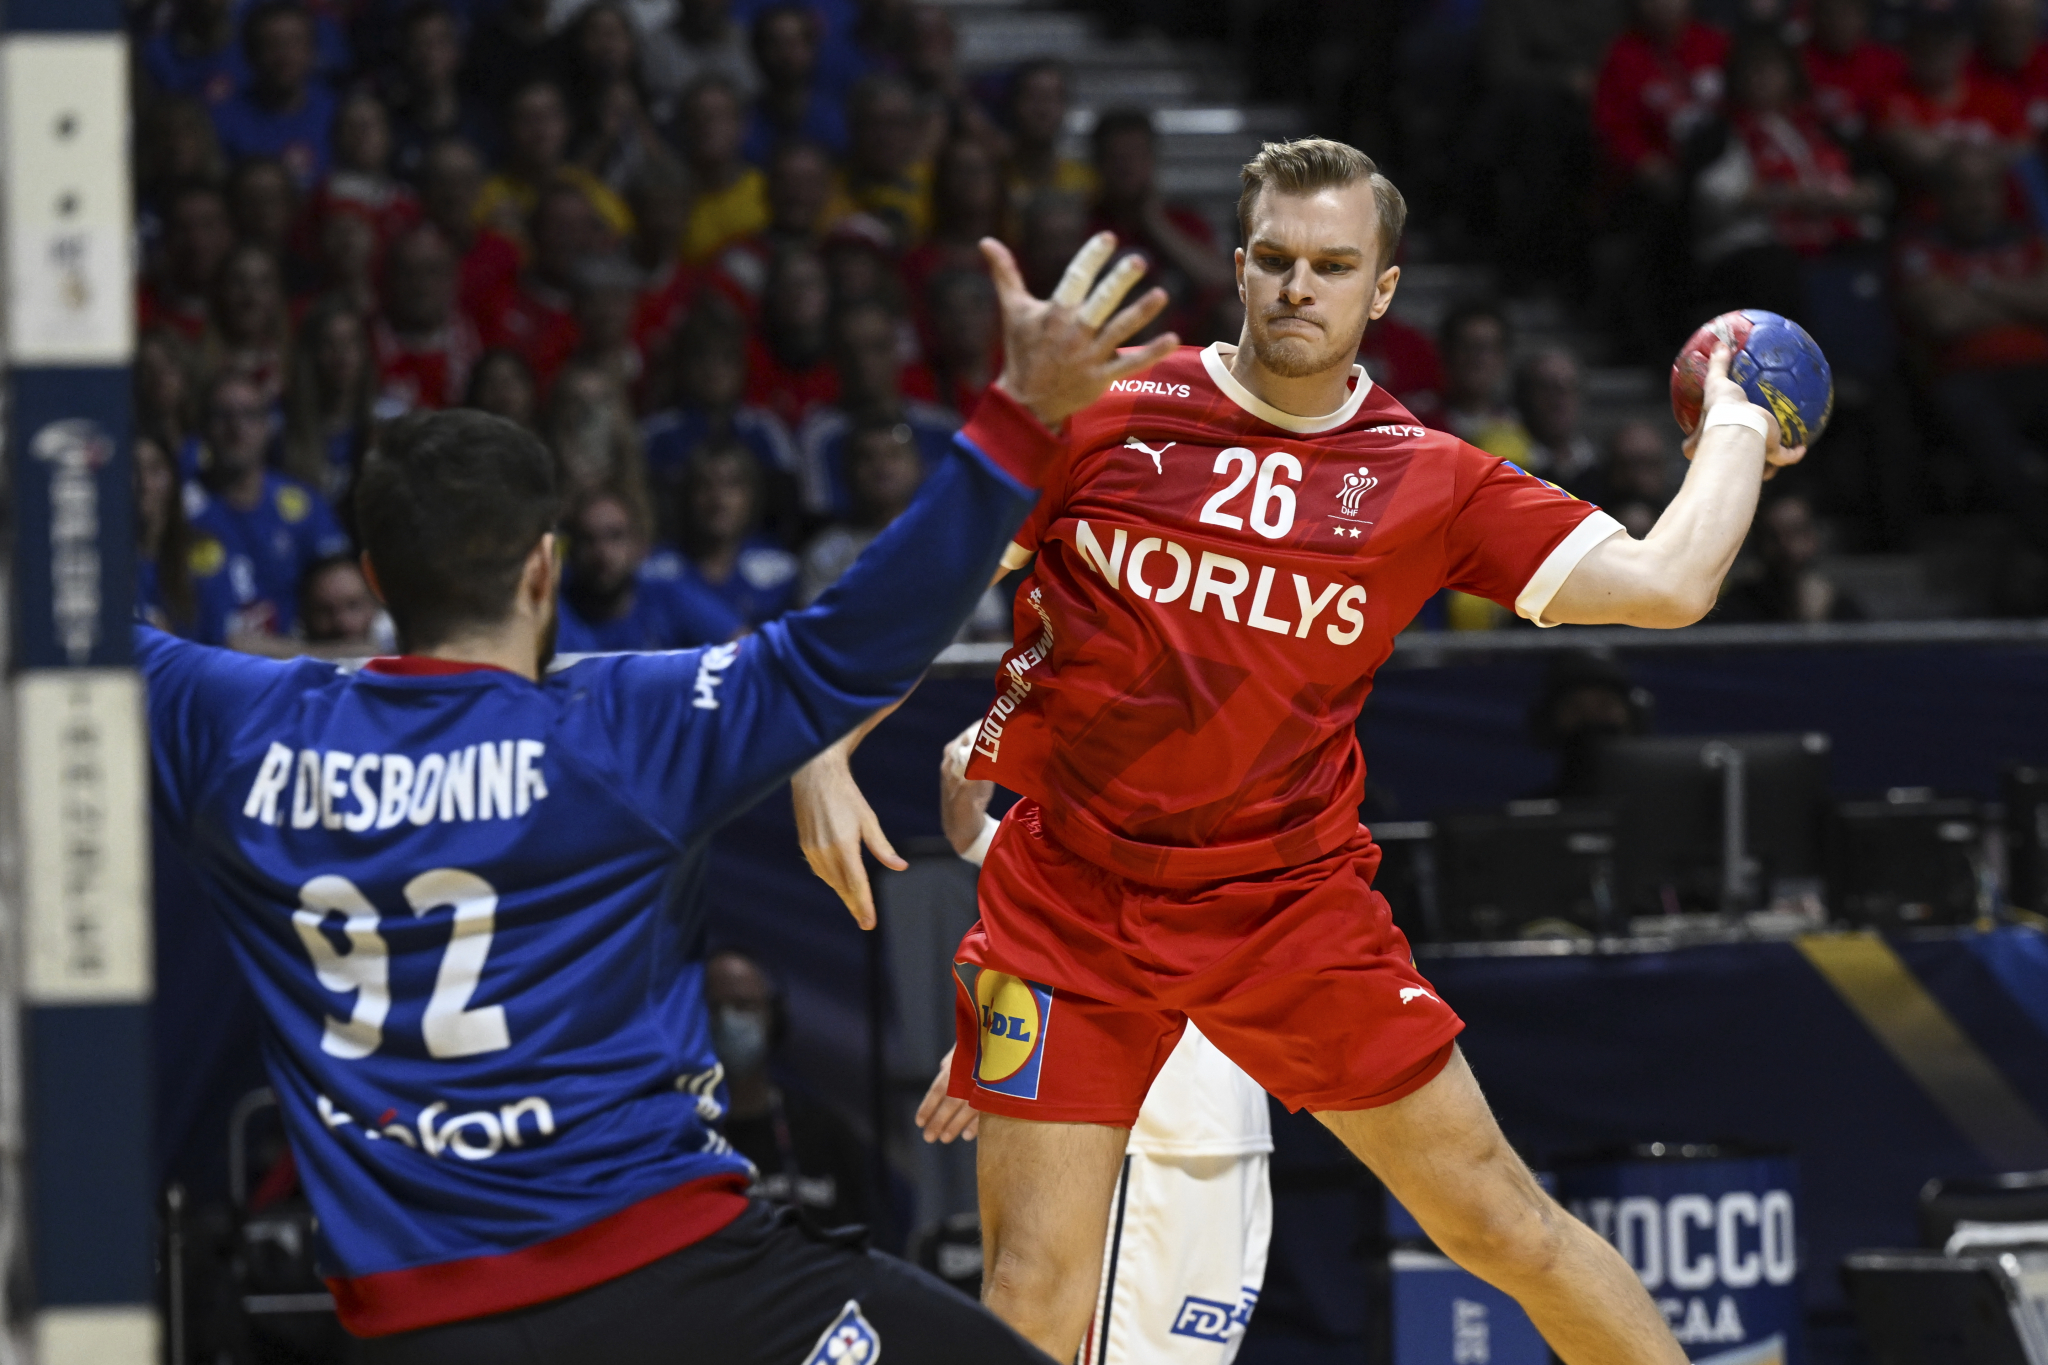 DOMINACIJA SE NASTAVLJA Danska po treći put uzastopno osvojila Svetsko prvenstvo